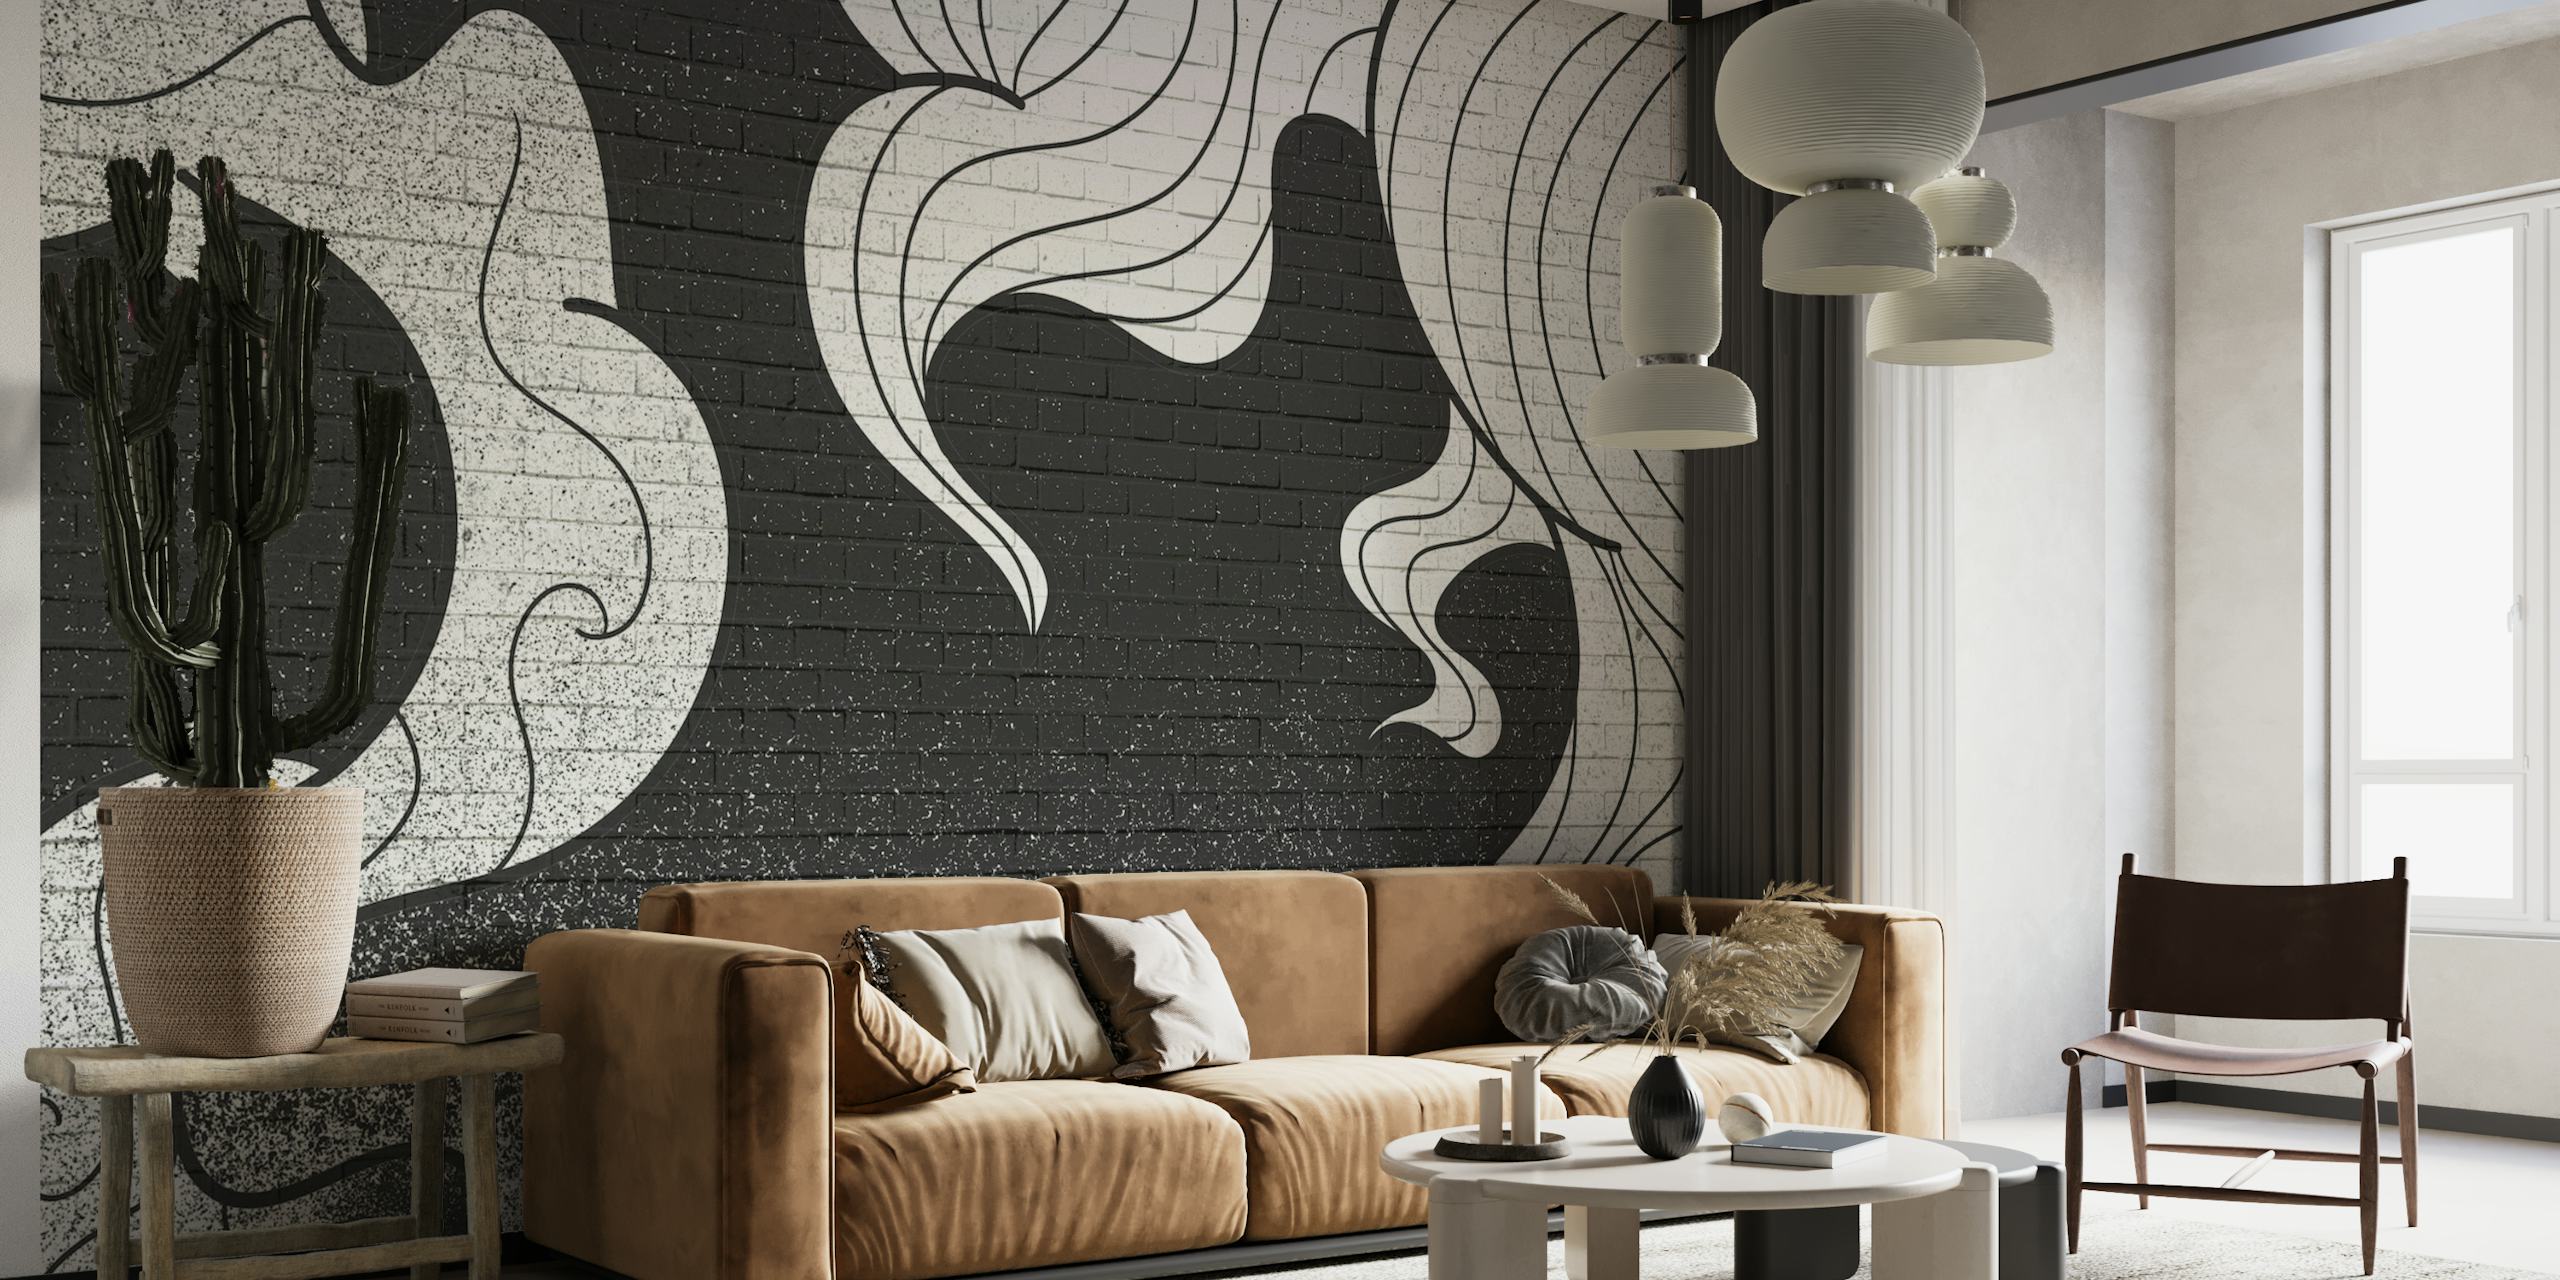 Fotomural vinílico de parede monocromático com padrão de graffiti de fumaça para decoração contemporânea